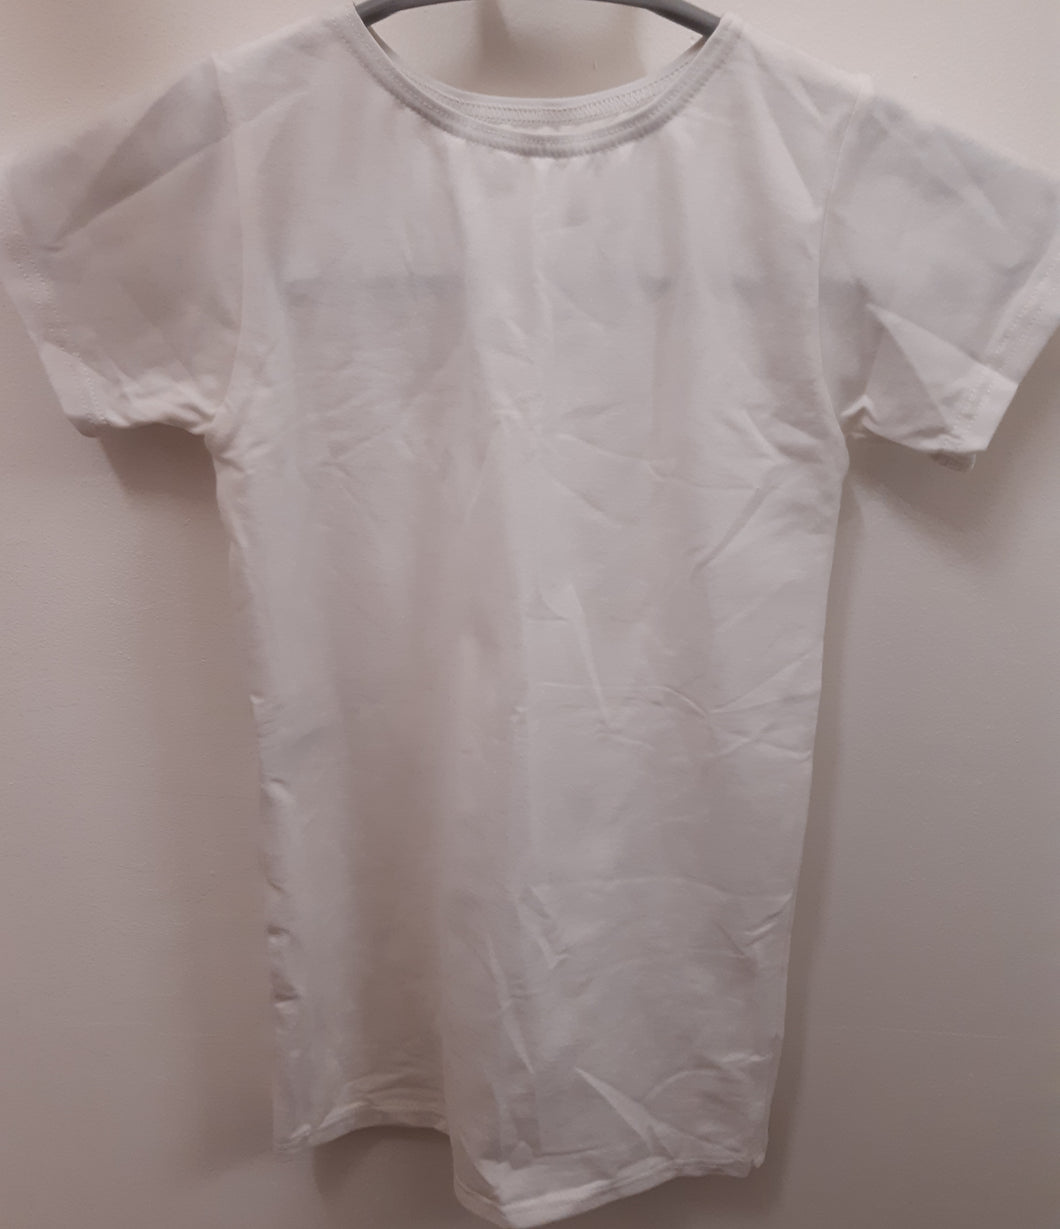 White Short Sleeve Boys/Mens Dance T-Shirt